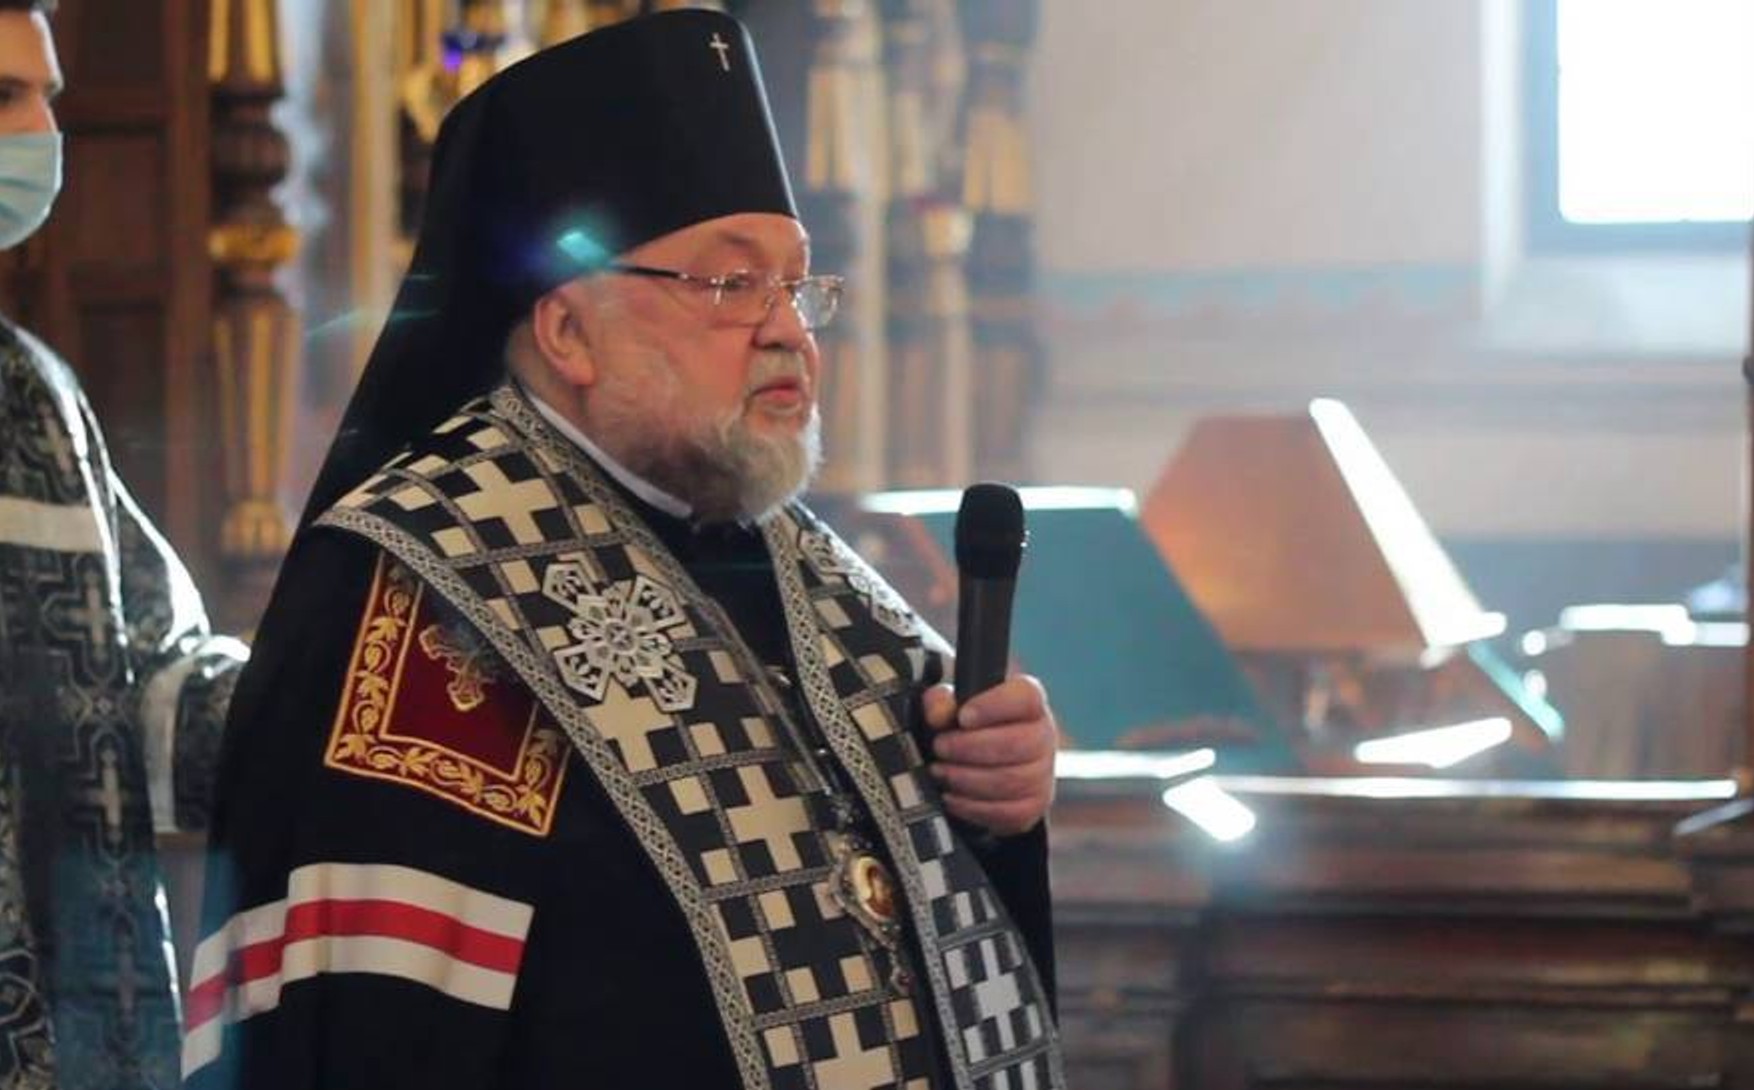 Синод РПЦ звільнив гродненського архієпископа Артемія від займаної посади. Він виступав проти режиму Лукашенка